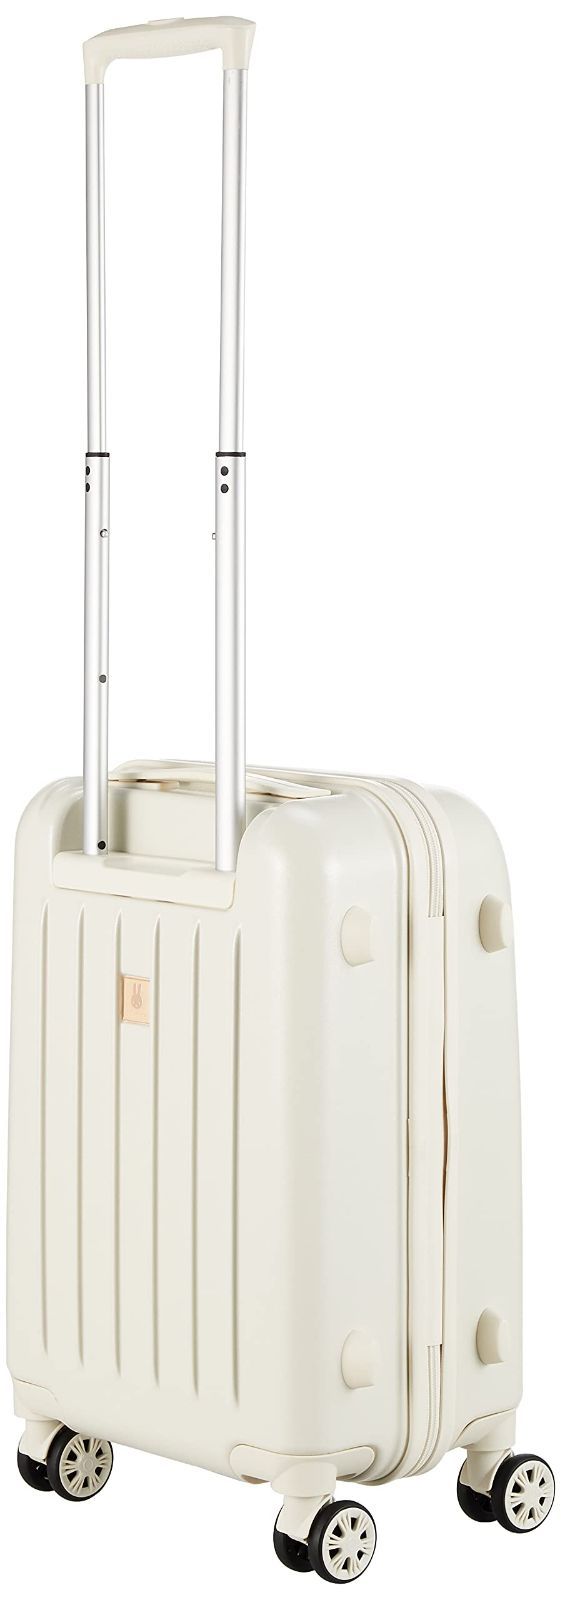 ハピタス スーツケース HAP3110 62 cm B99 フェイスホワイト ...